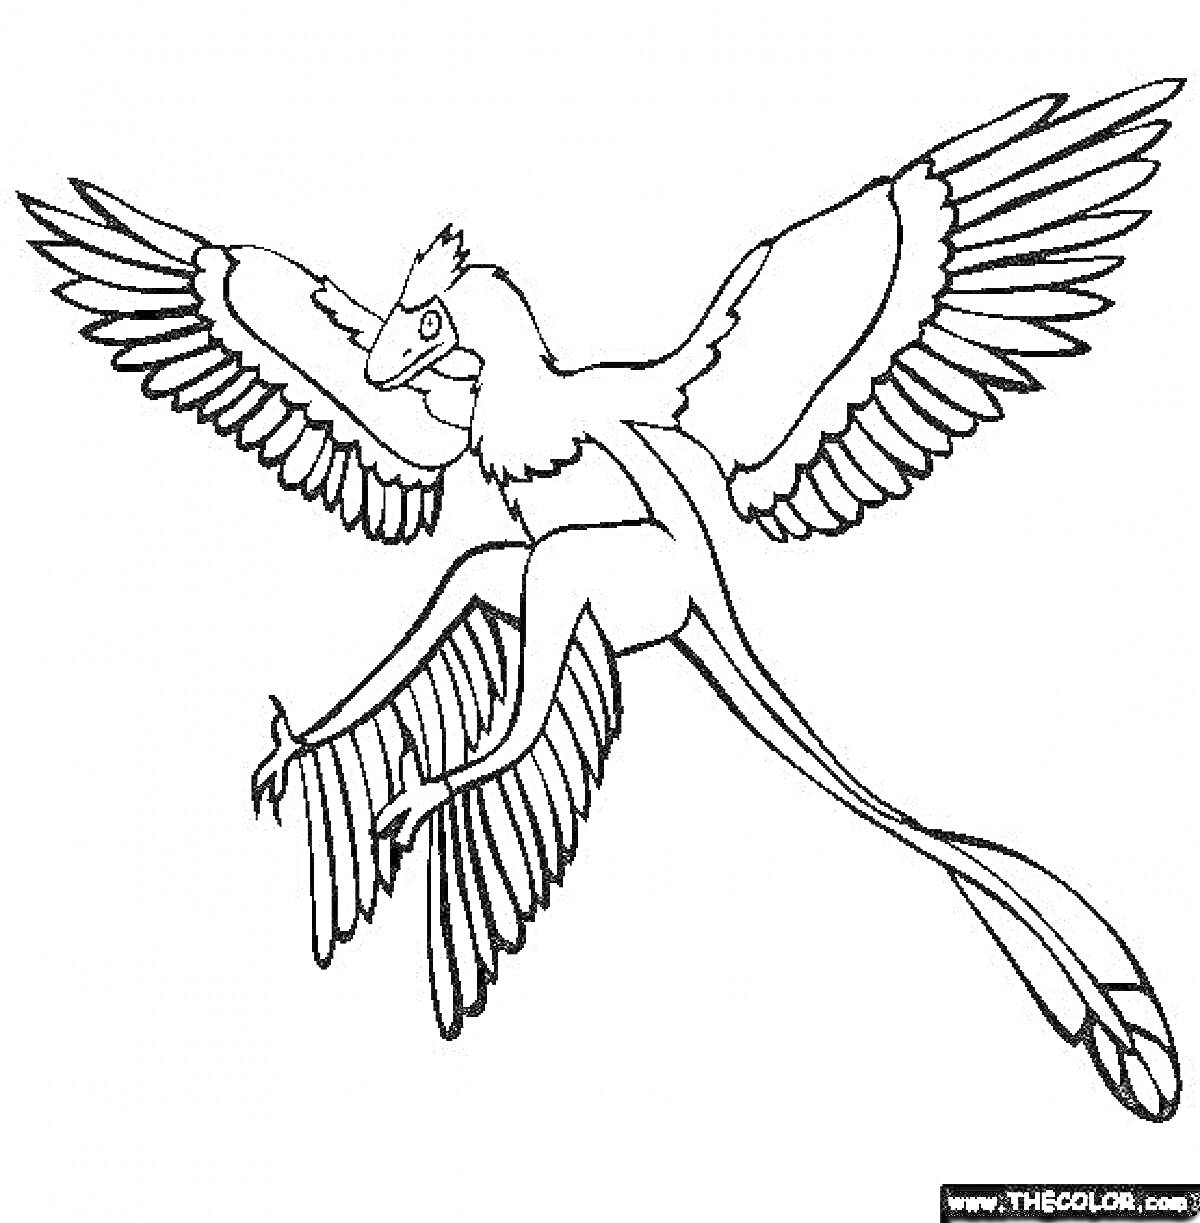 Раскраска Летящий археоптерикс с расправленными крыльями и длинным хвостом